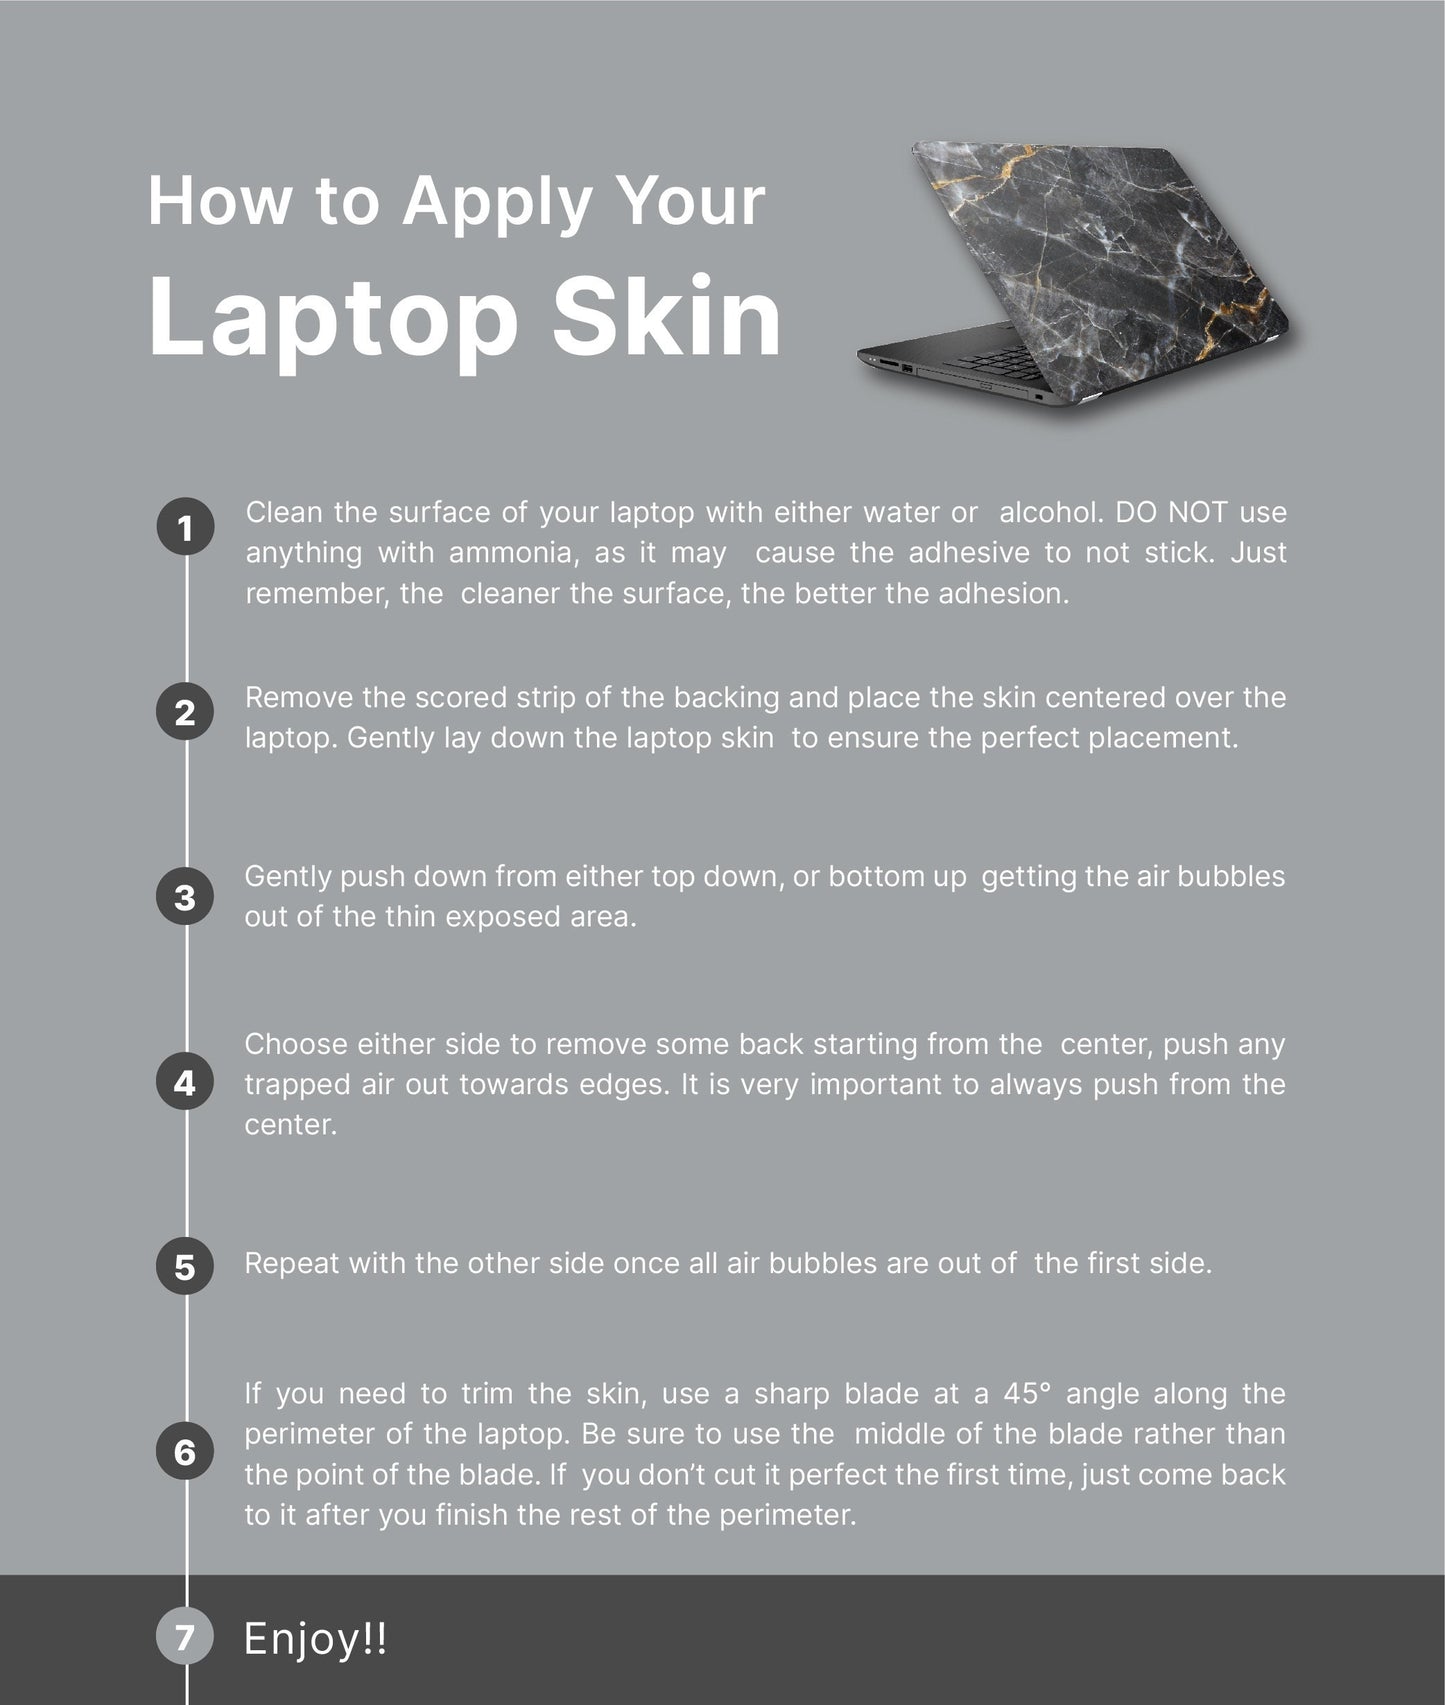 Dark Floral Laptop Skin, Laptop Cover, Laptop Skins, Removable Laptop Skins, Laptop Decal, Customized Laptop Skin, Laptop Stickers 399